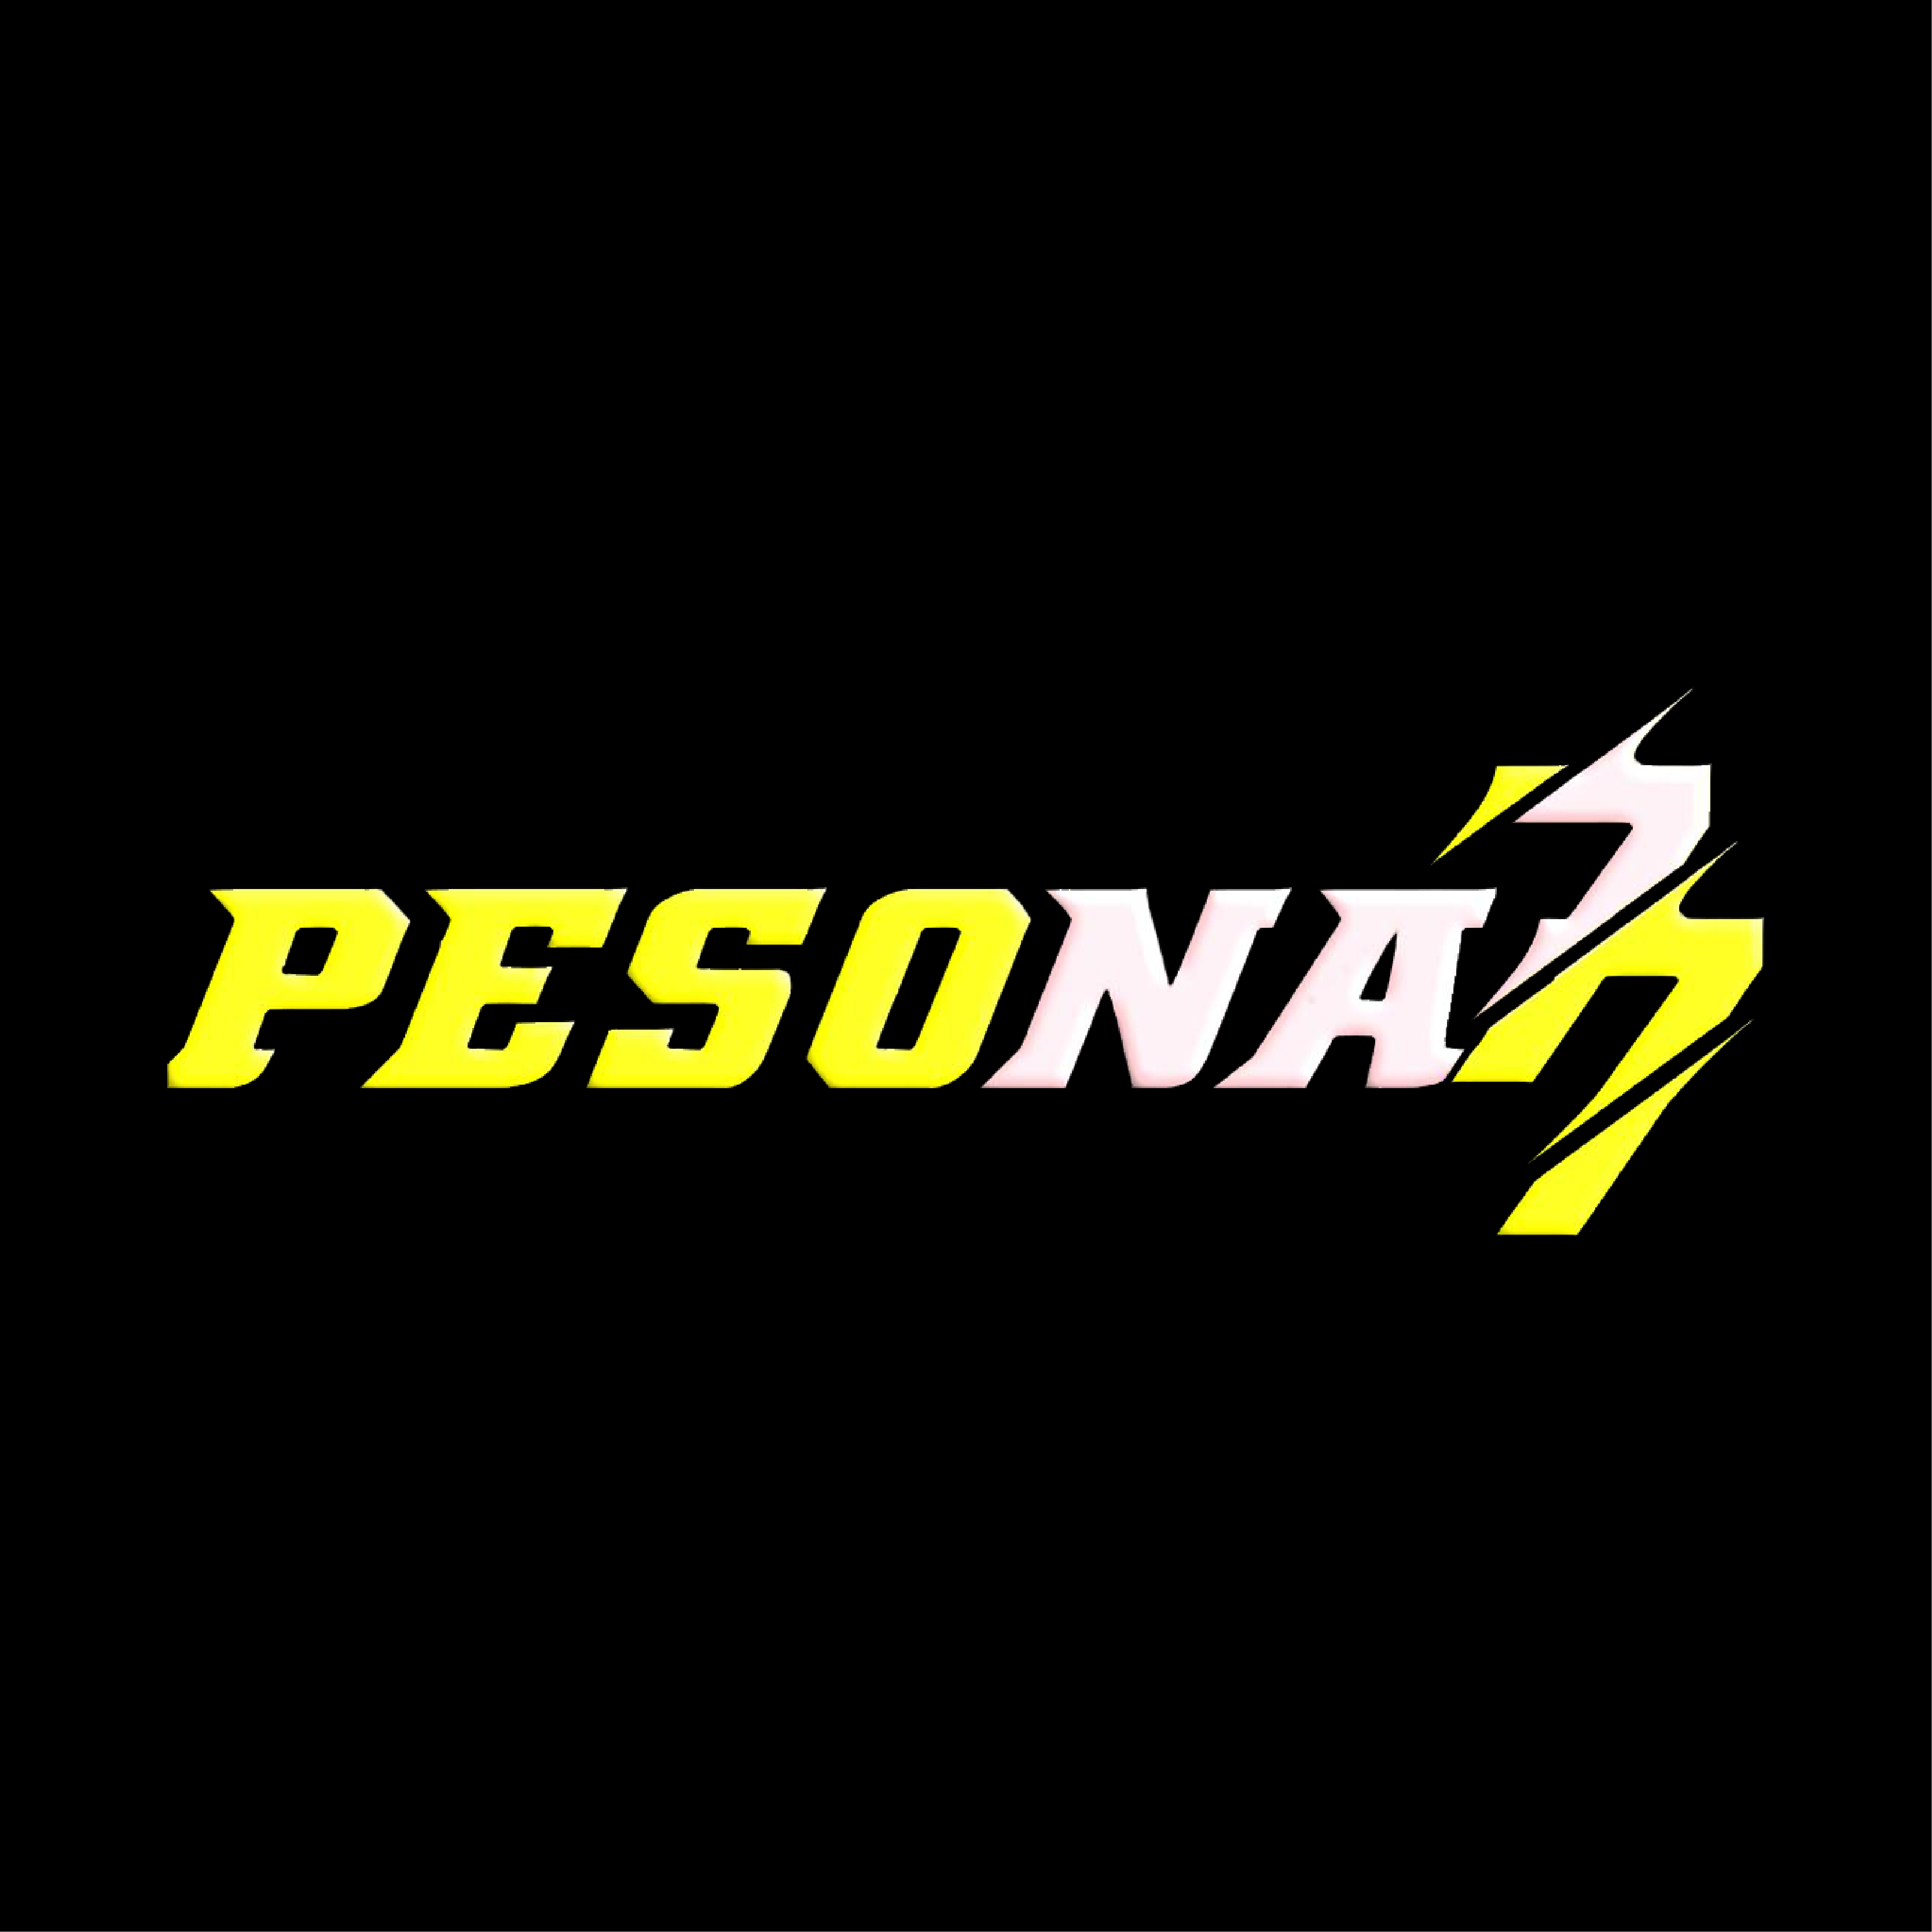 Pesona77